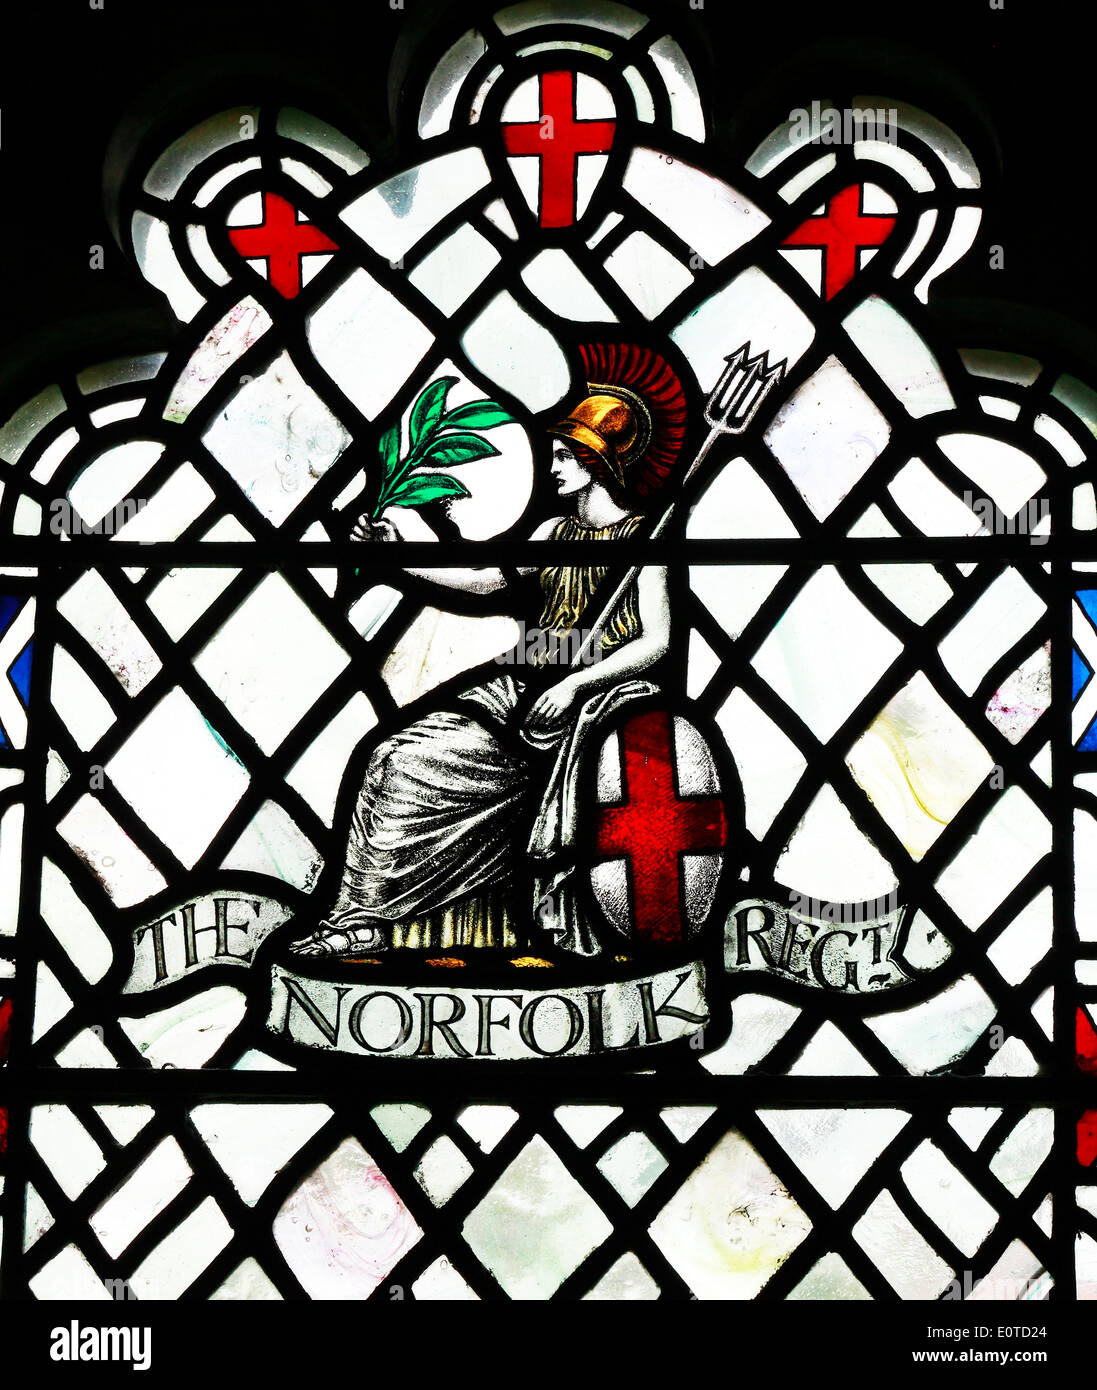 Le vitrail commémoratif à Norfolk Regiment, qui a disparu à la 1ère guerre mondiale, par Karl Parsons 1920, style Arts and Crafts Banque D'Images